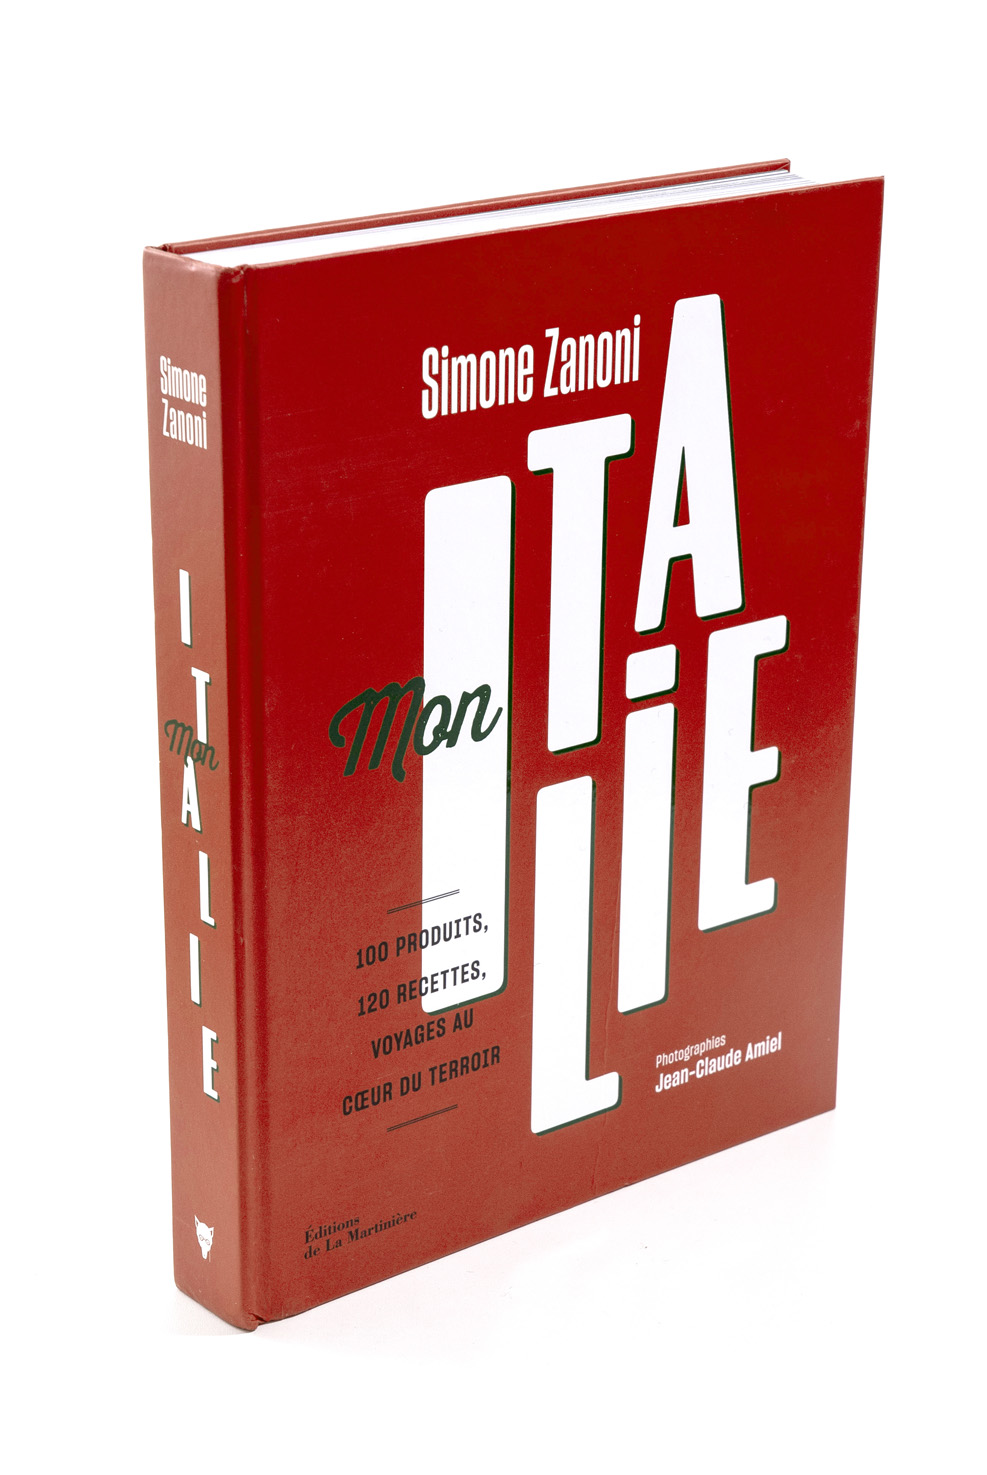   Mon Italie - couverture  Simone Zanoni  Éditions de La Martinière  410 pages 